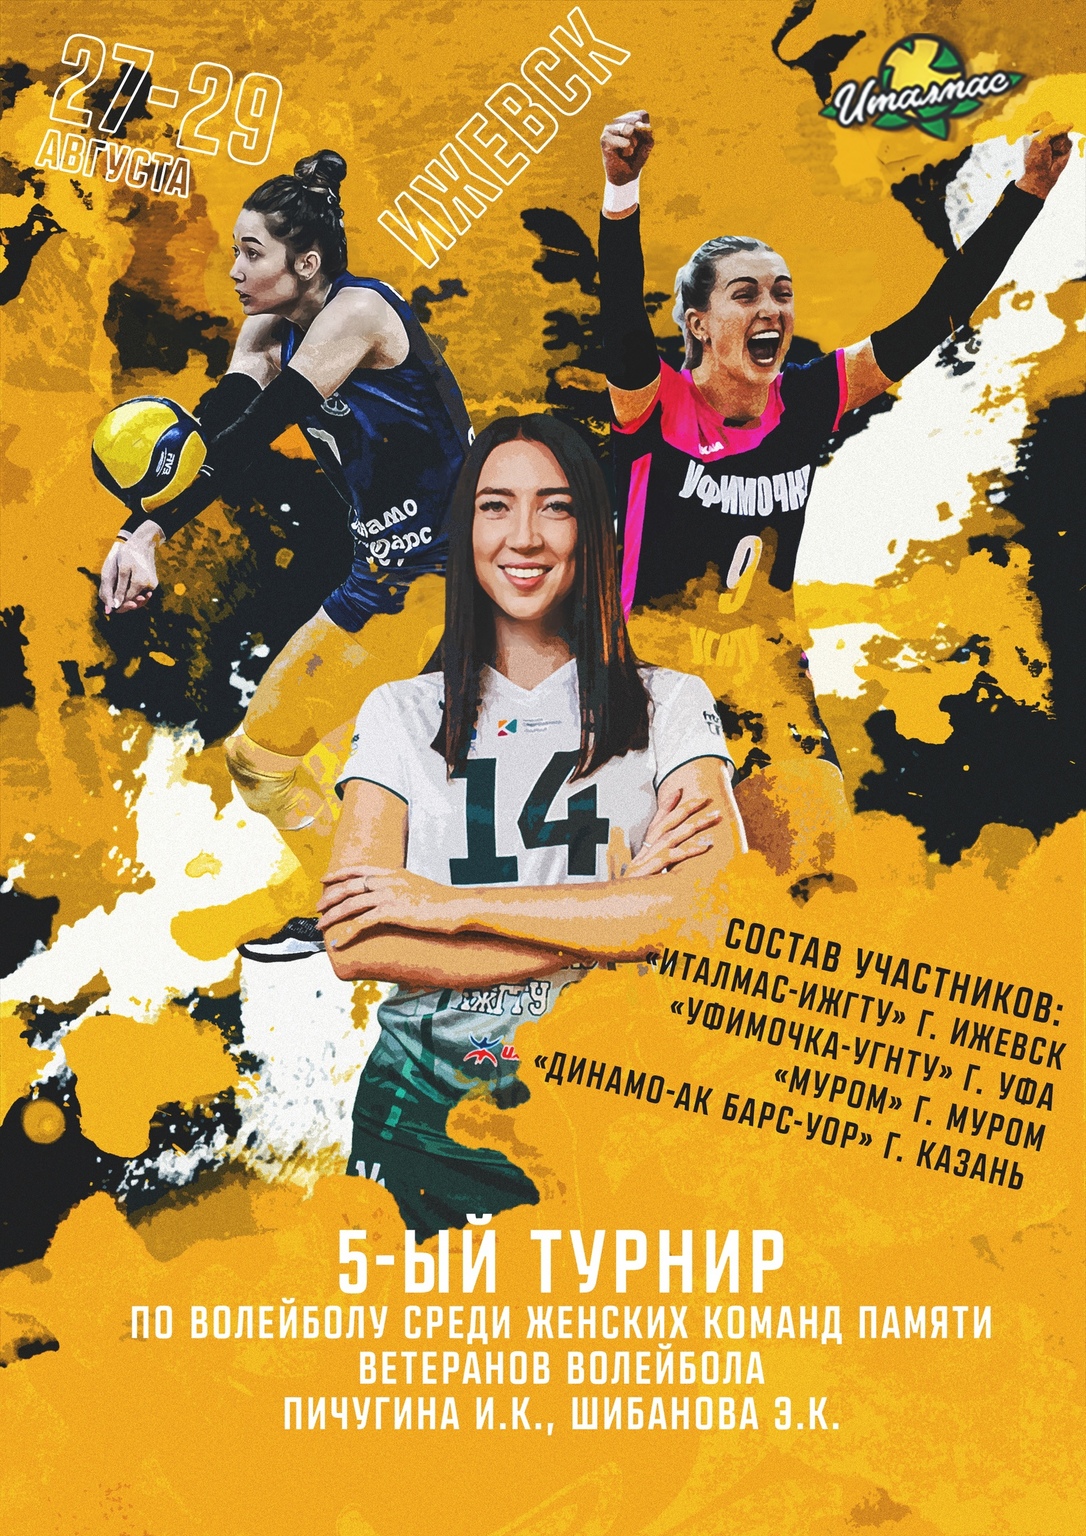 Афиша Ижевска — Турнир по волейболу памяти ветеранов